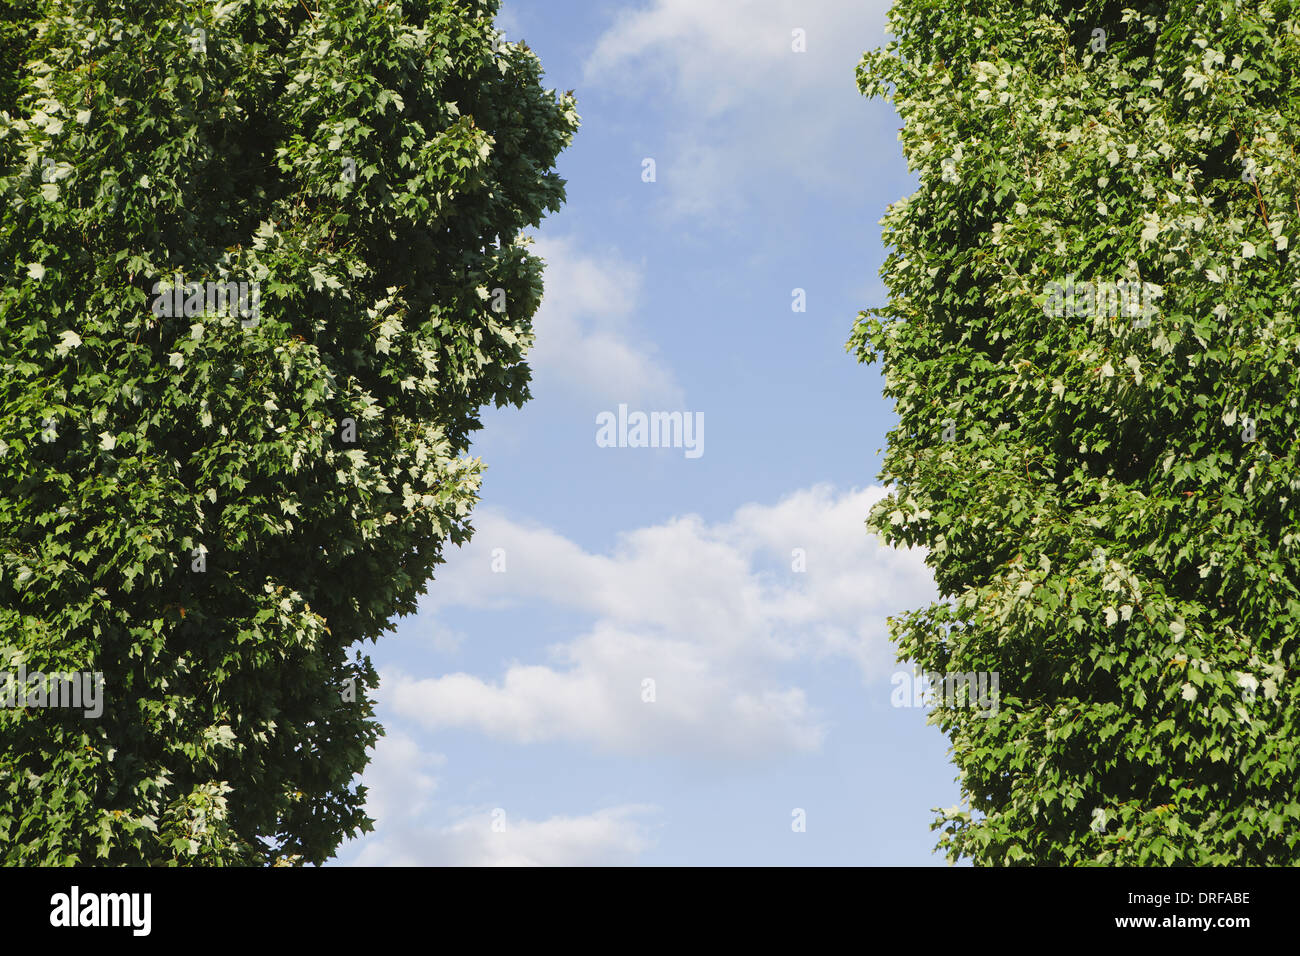 Stato di Washington usa due alberi con fogliame verde Foto Stock